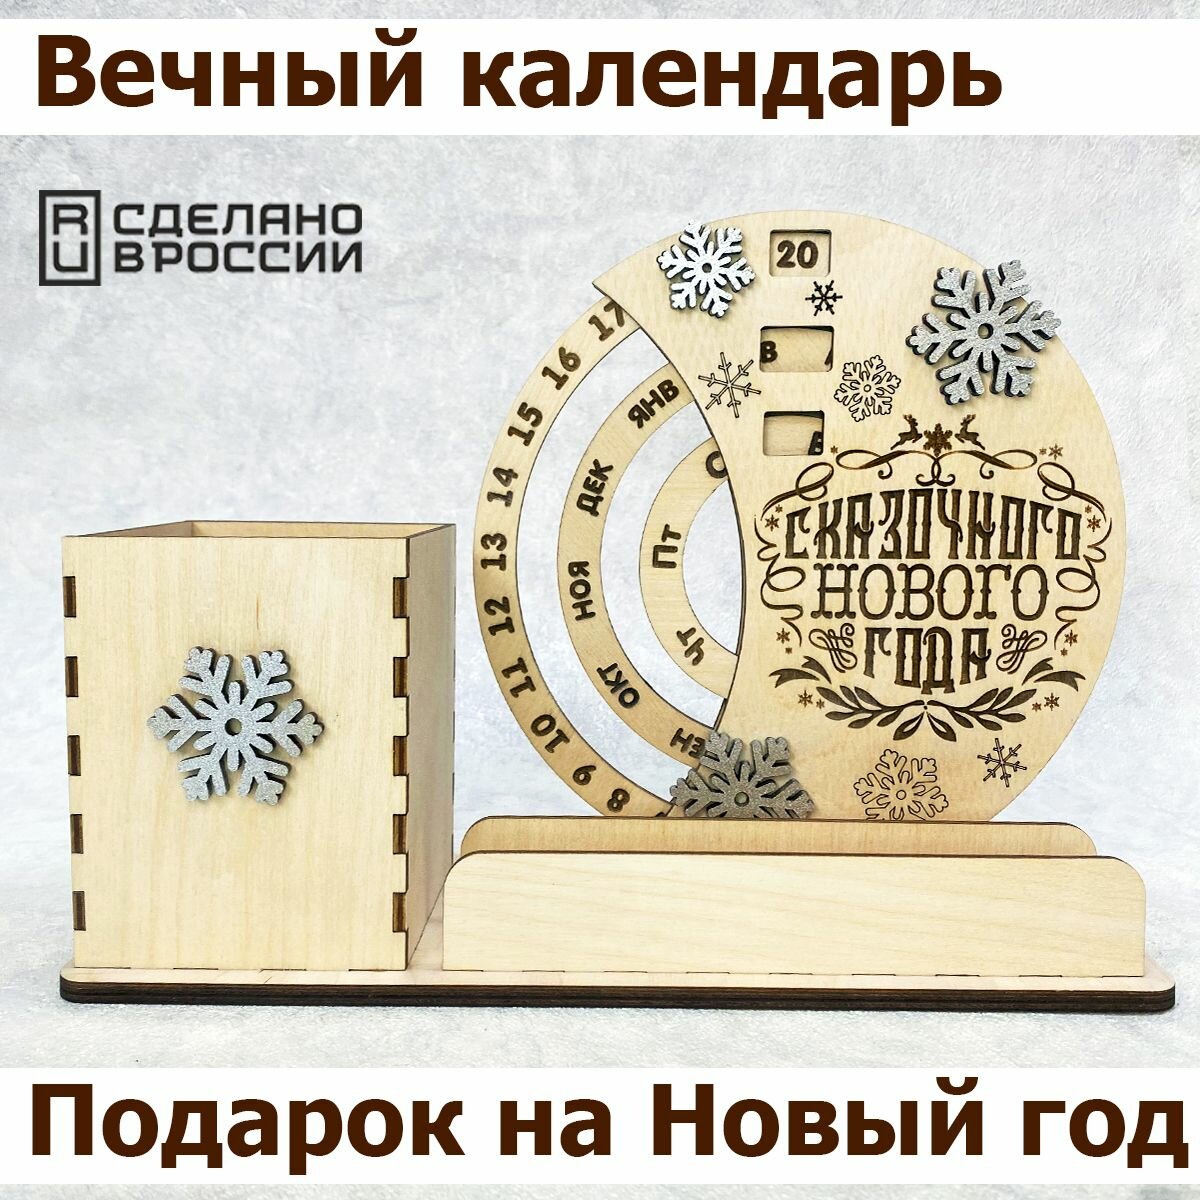 Вечный календарь, органайзер для канцелярии деревянный, подарок на Новый год, новогодний календарь из дерева